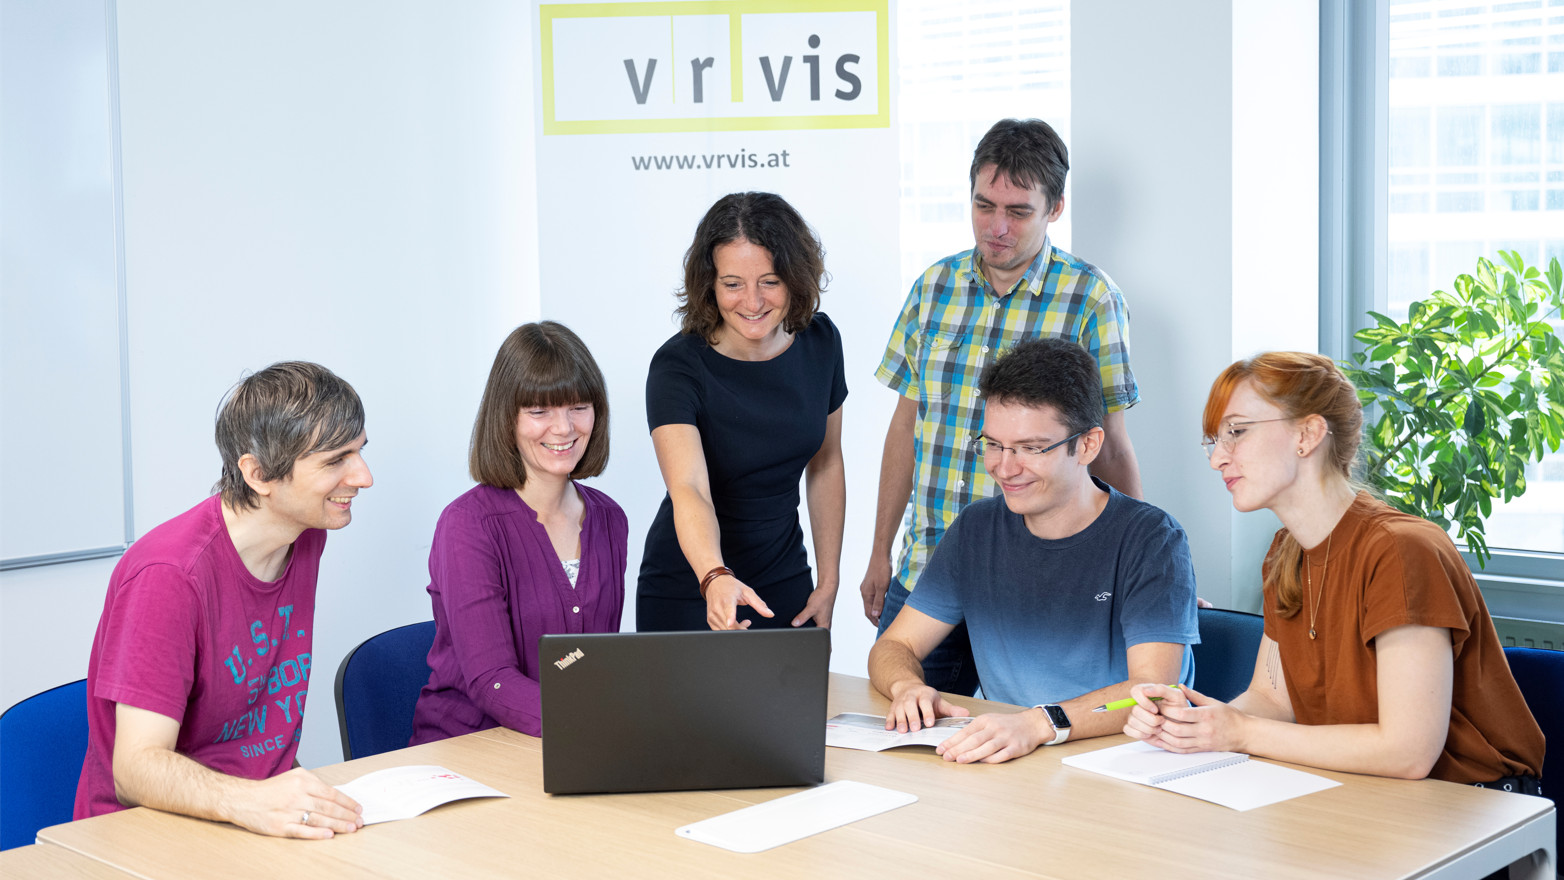 Das Team "Visual Analytics" des VRVis an einem Besprechungstisch mit Laptop und VRVis-Banner im Hintergrund. 